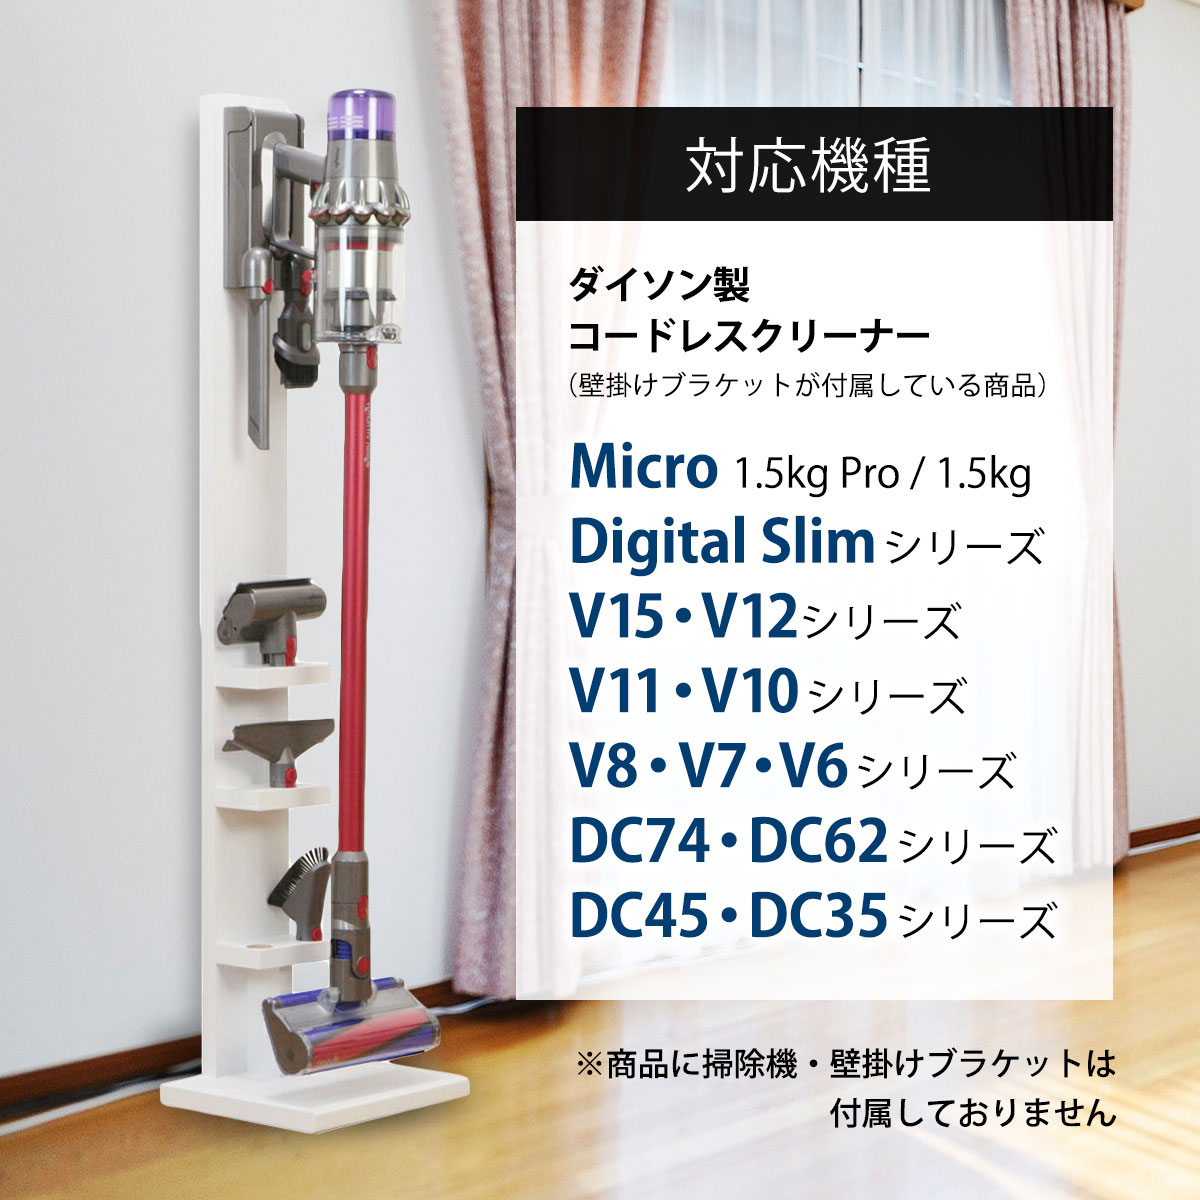 【送料無料】ダイソン コードレスクリーナー 壁寄せ 充電スタンド付属品収納モデル 日本製 Dyson V15 V12 Micro Digital  Slim V11 V10 V8 V7 V6 DC74 DC62 DC45 DC35対応 | シアターハウス